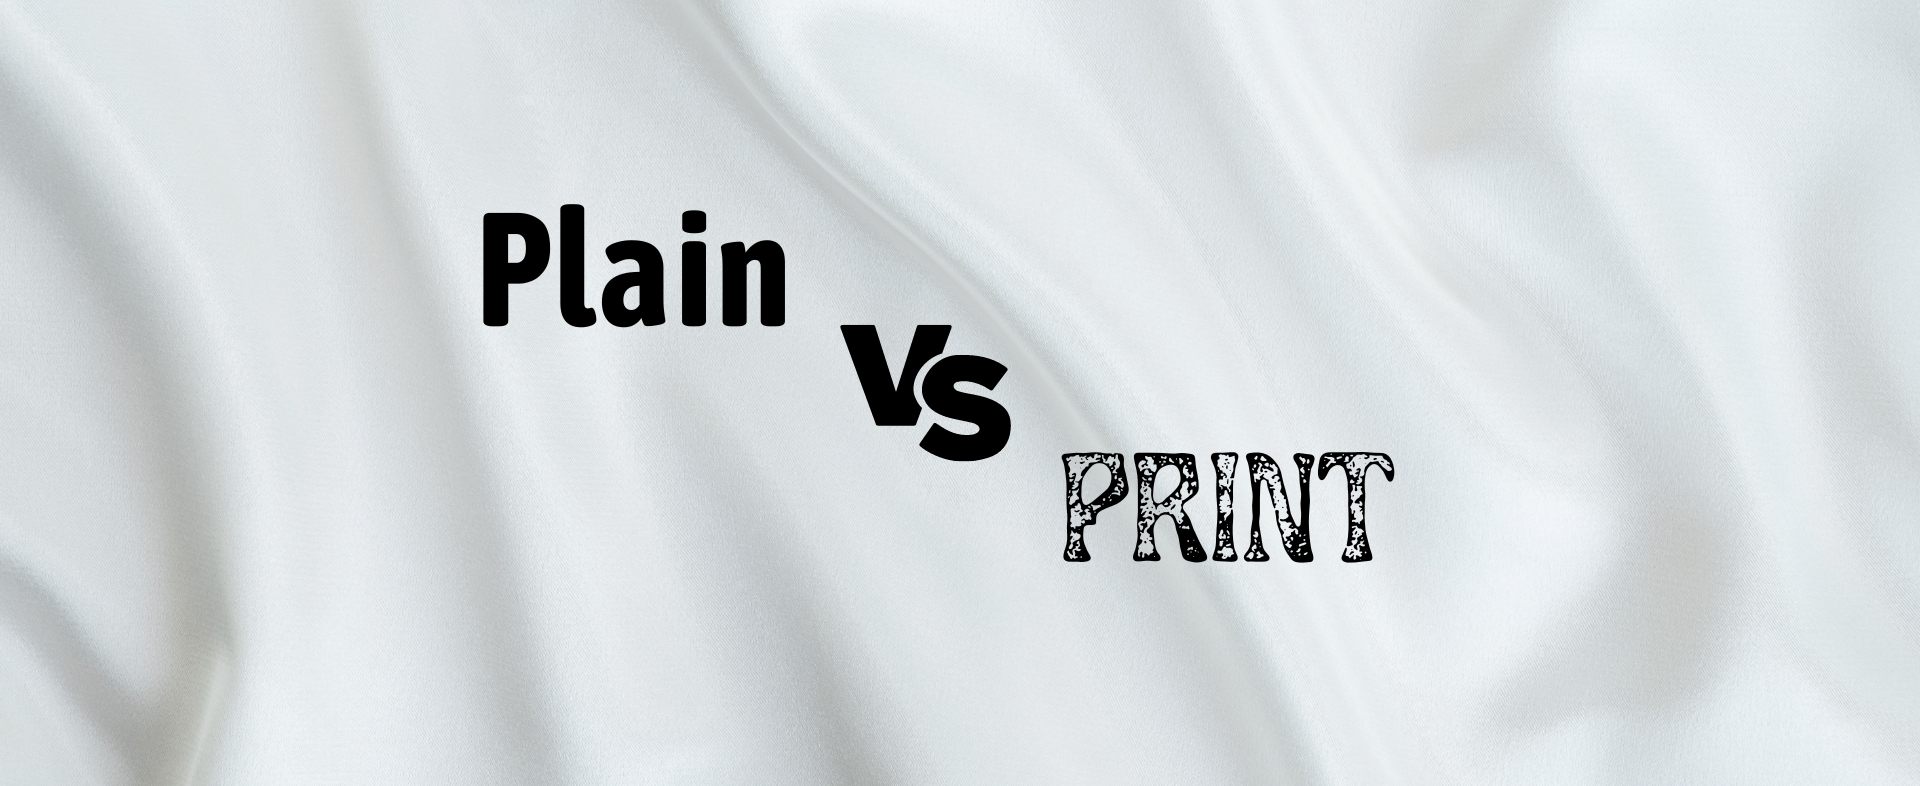 Print vs Plain